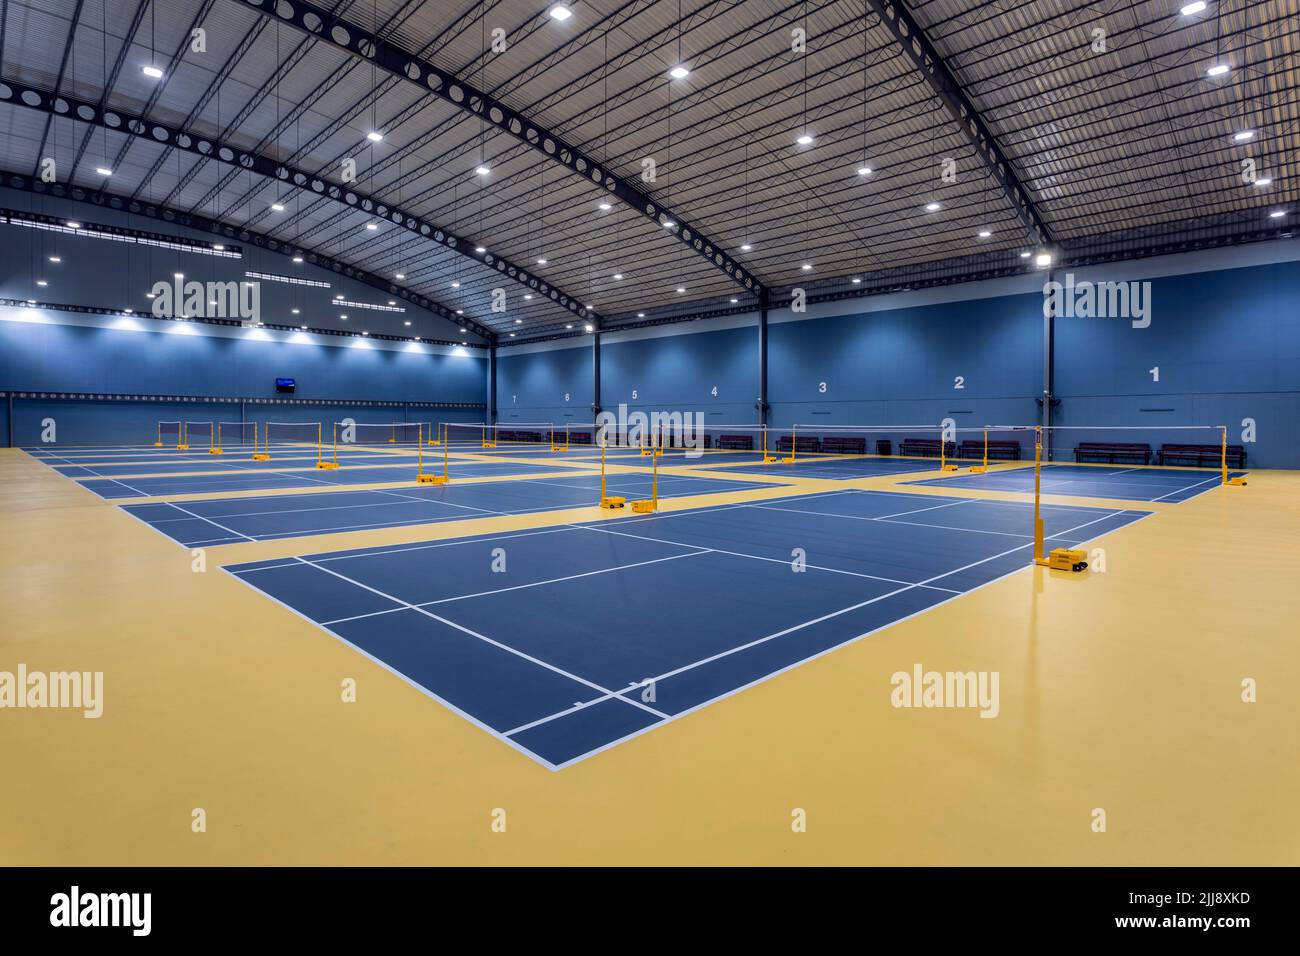 Chonburi, Thailand - April 26, 2017: Indoor badminton court with Decoflex flooring at Bowin Arena located in Chonburi, Thailand. Stock Photo